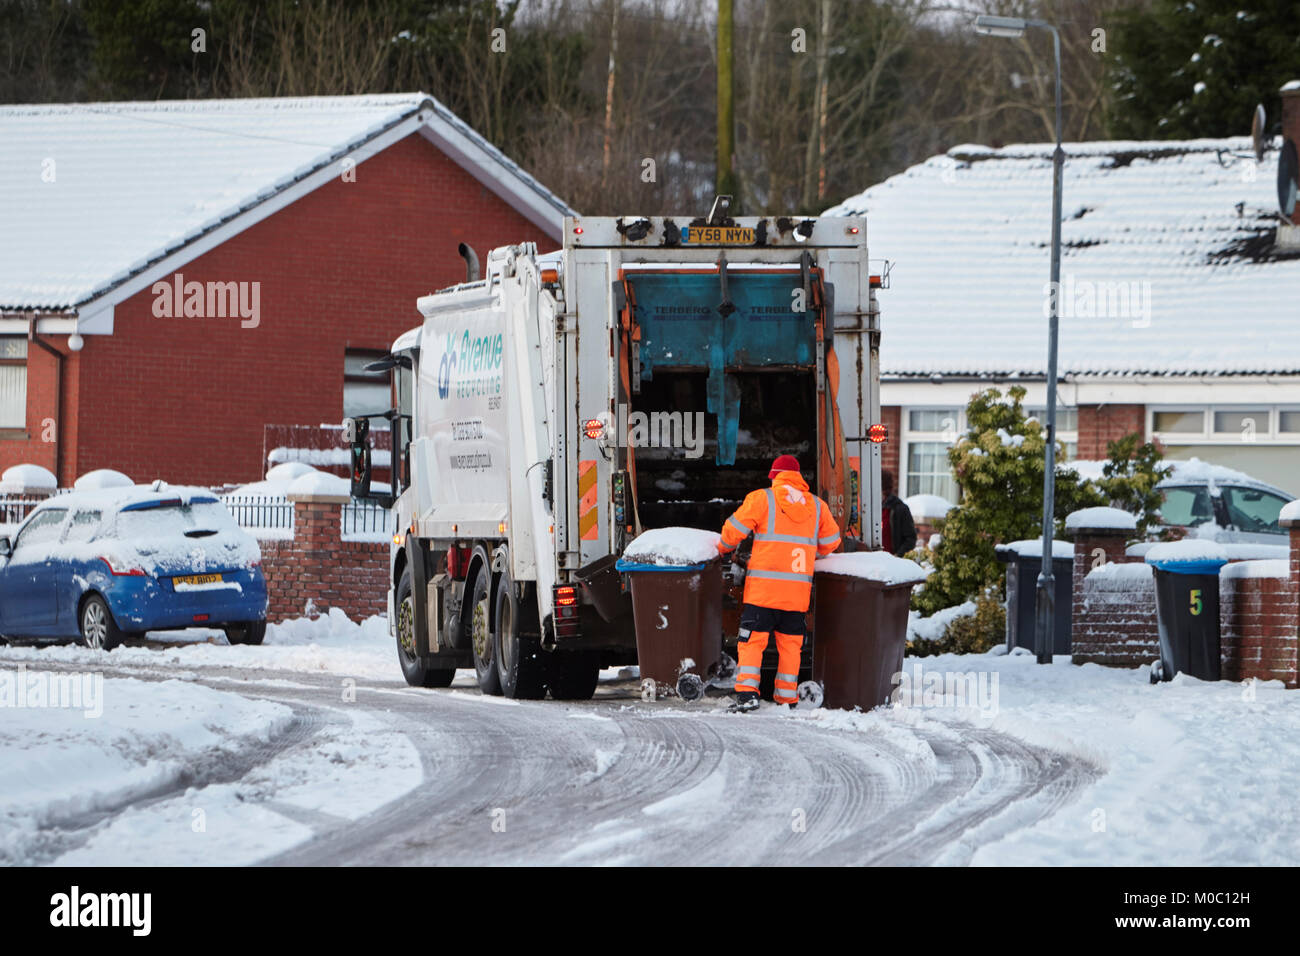 Bacs de collecte travailleur avec conduite de camion de recyclage d'ordures dans cette rue couverte de neige dans la région de Belfast en Irlande du Nord Banque D'Images